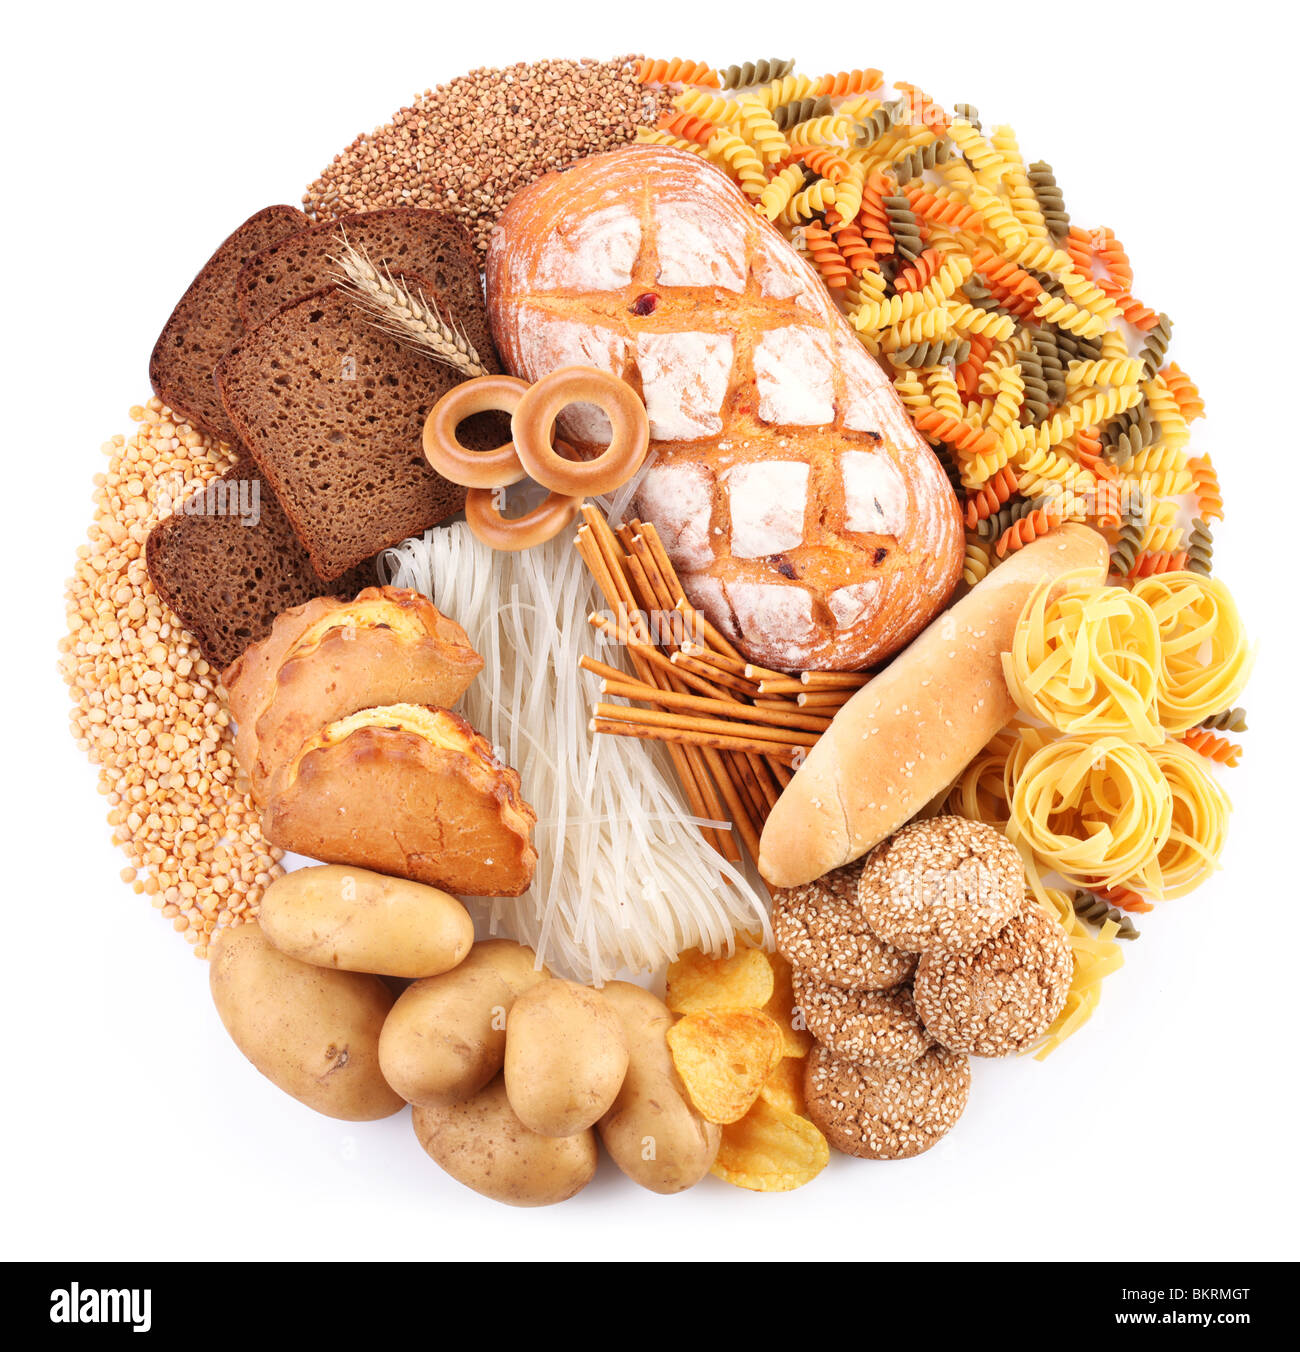 Le pain et les produits de boulangerie sous la forme d'un cercle. Isolé sur fond blanc. Banque D'Images